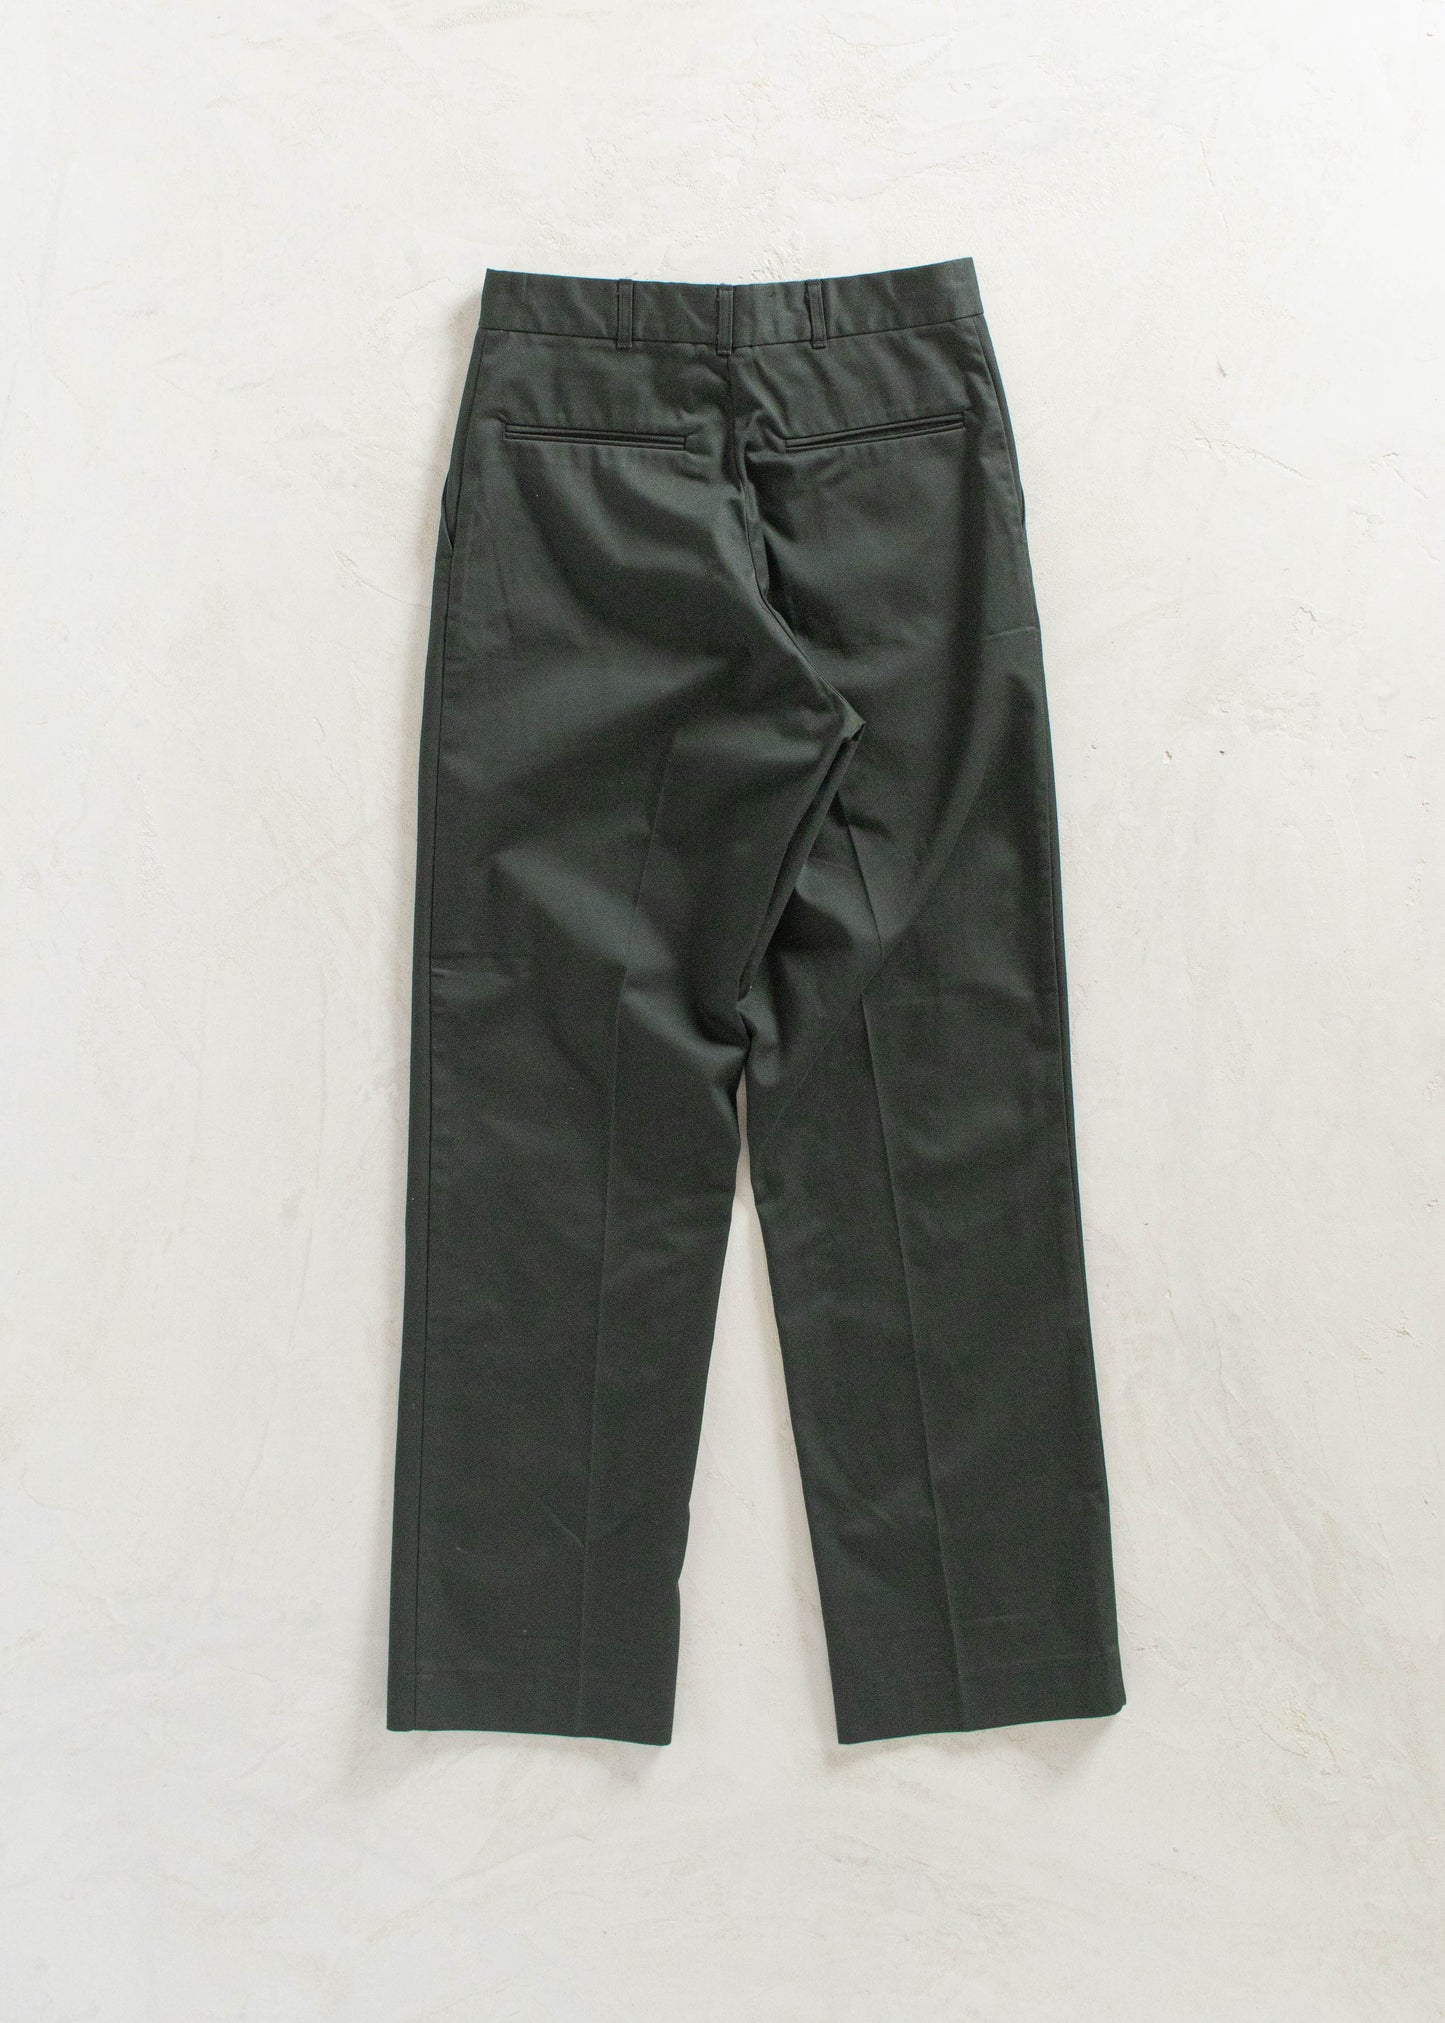 Vintage 1990s Military Cadet Pants Size Women's 26 Men's 30